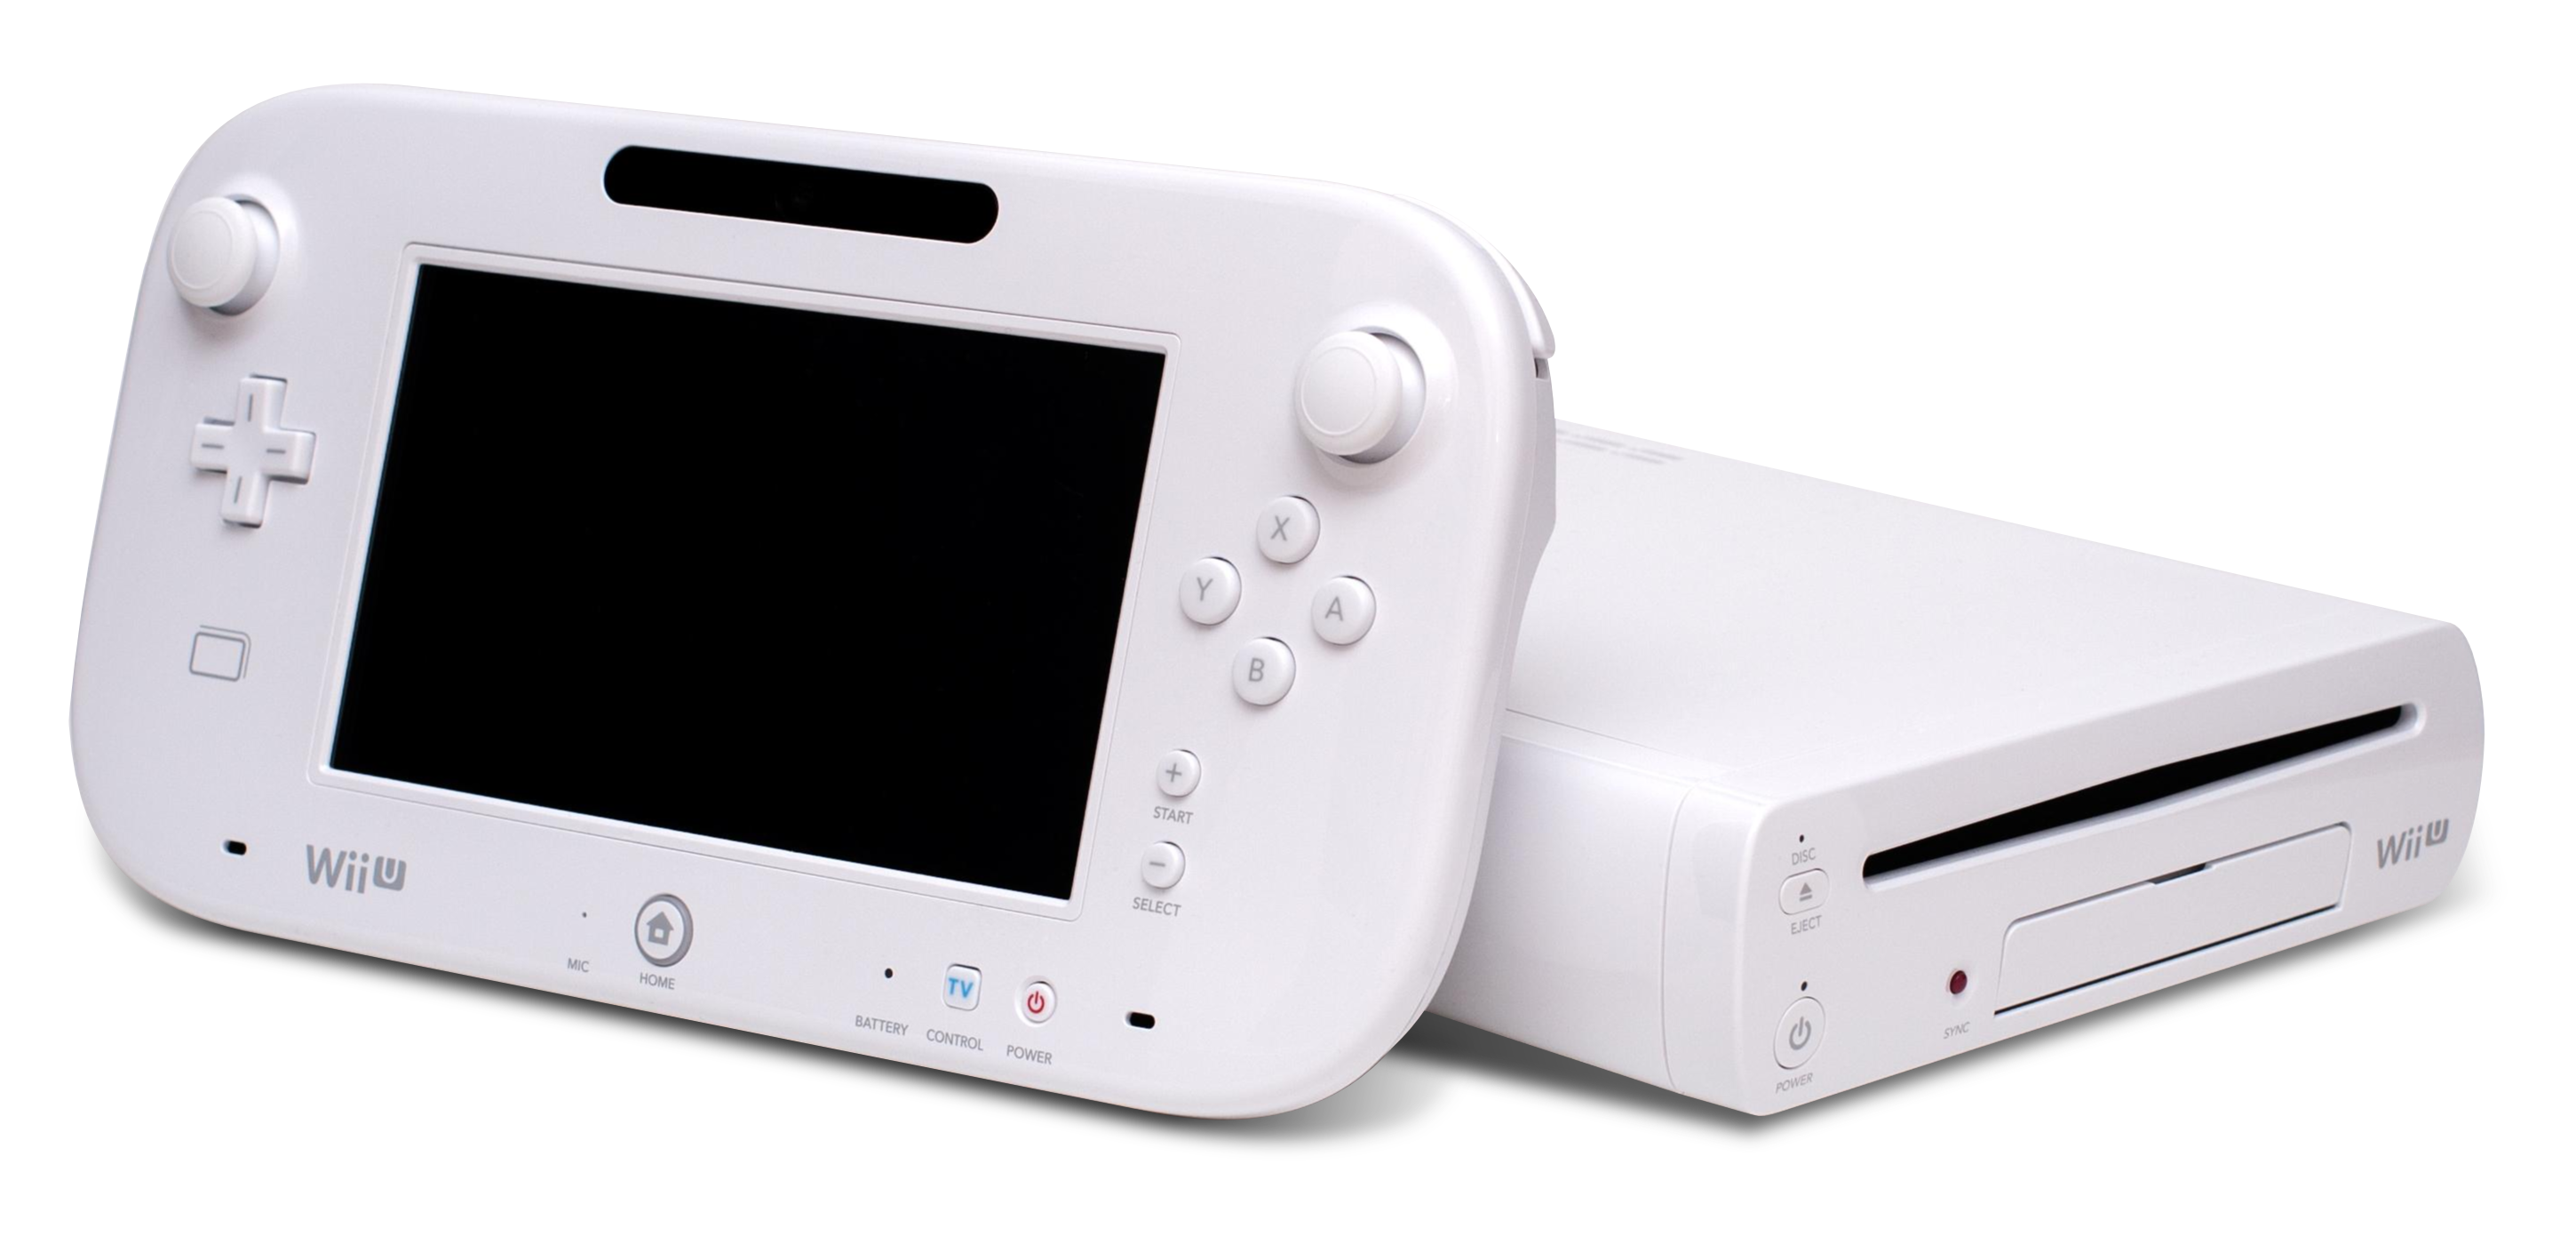 La Wii U succède à la Wii et propose une nouvelle manière de jouer